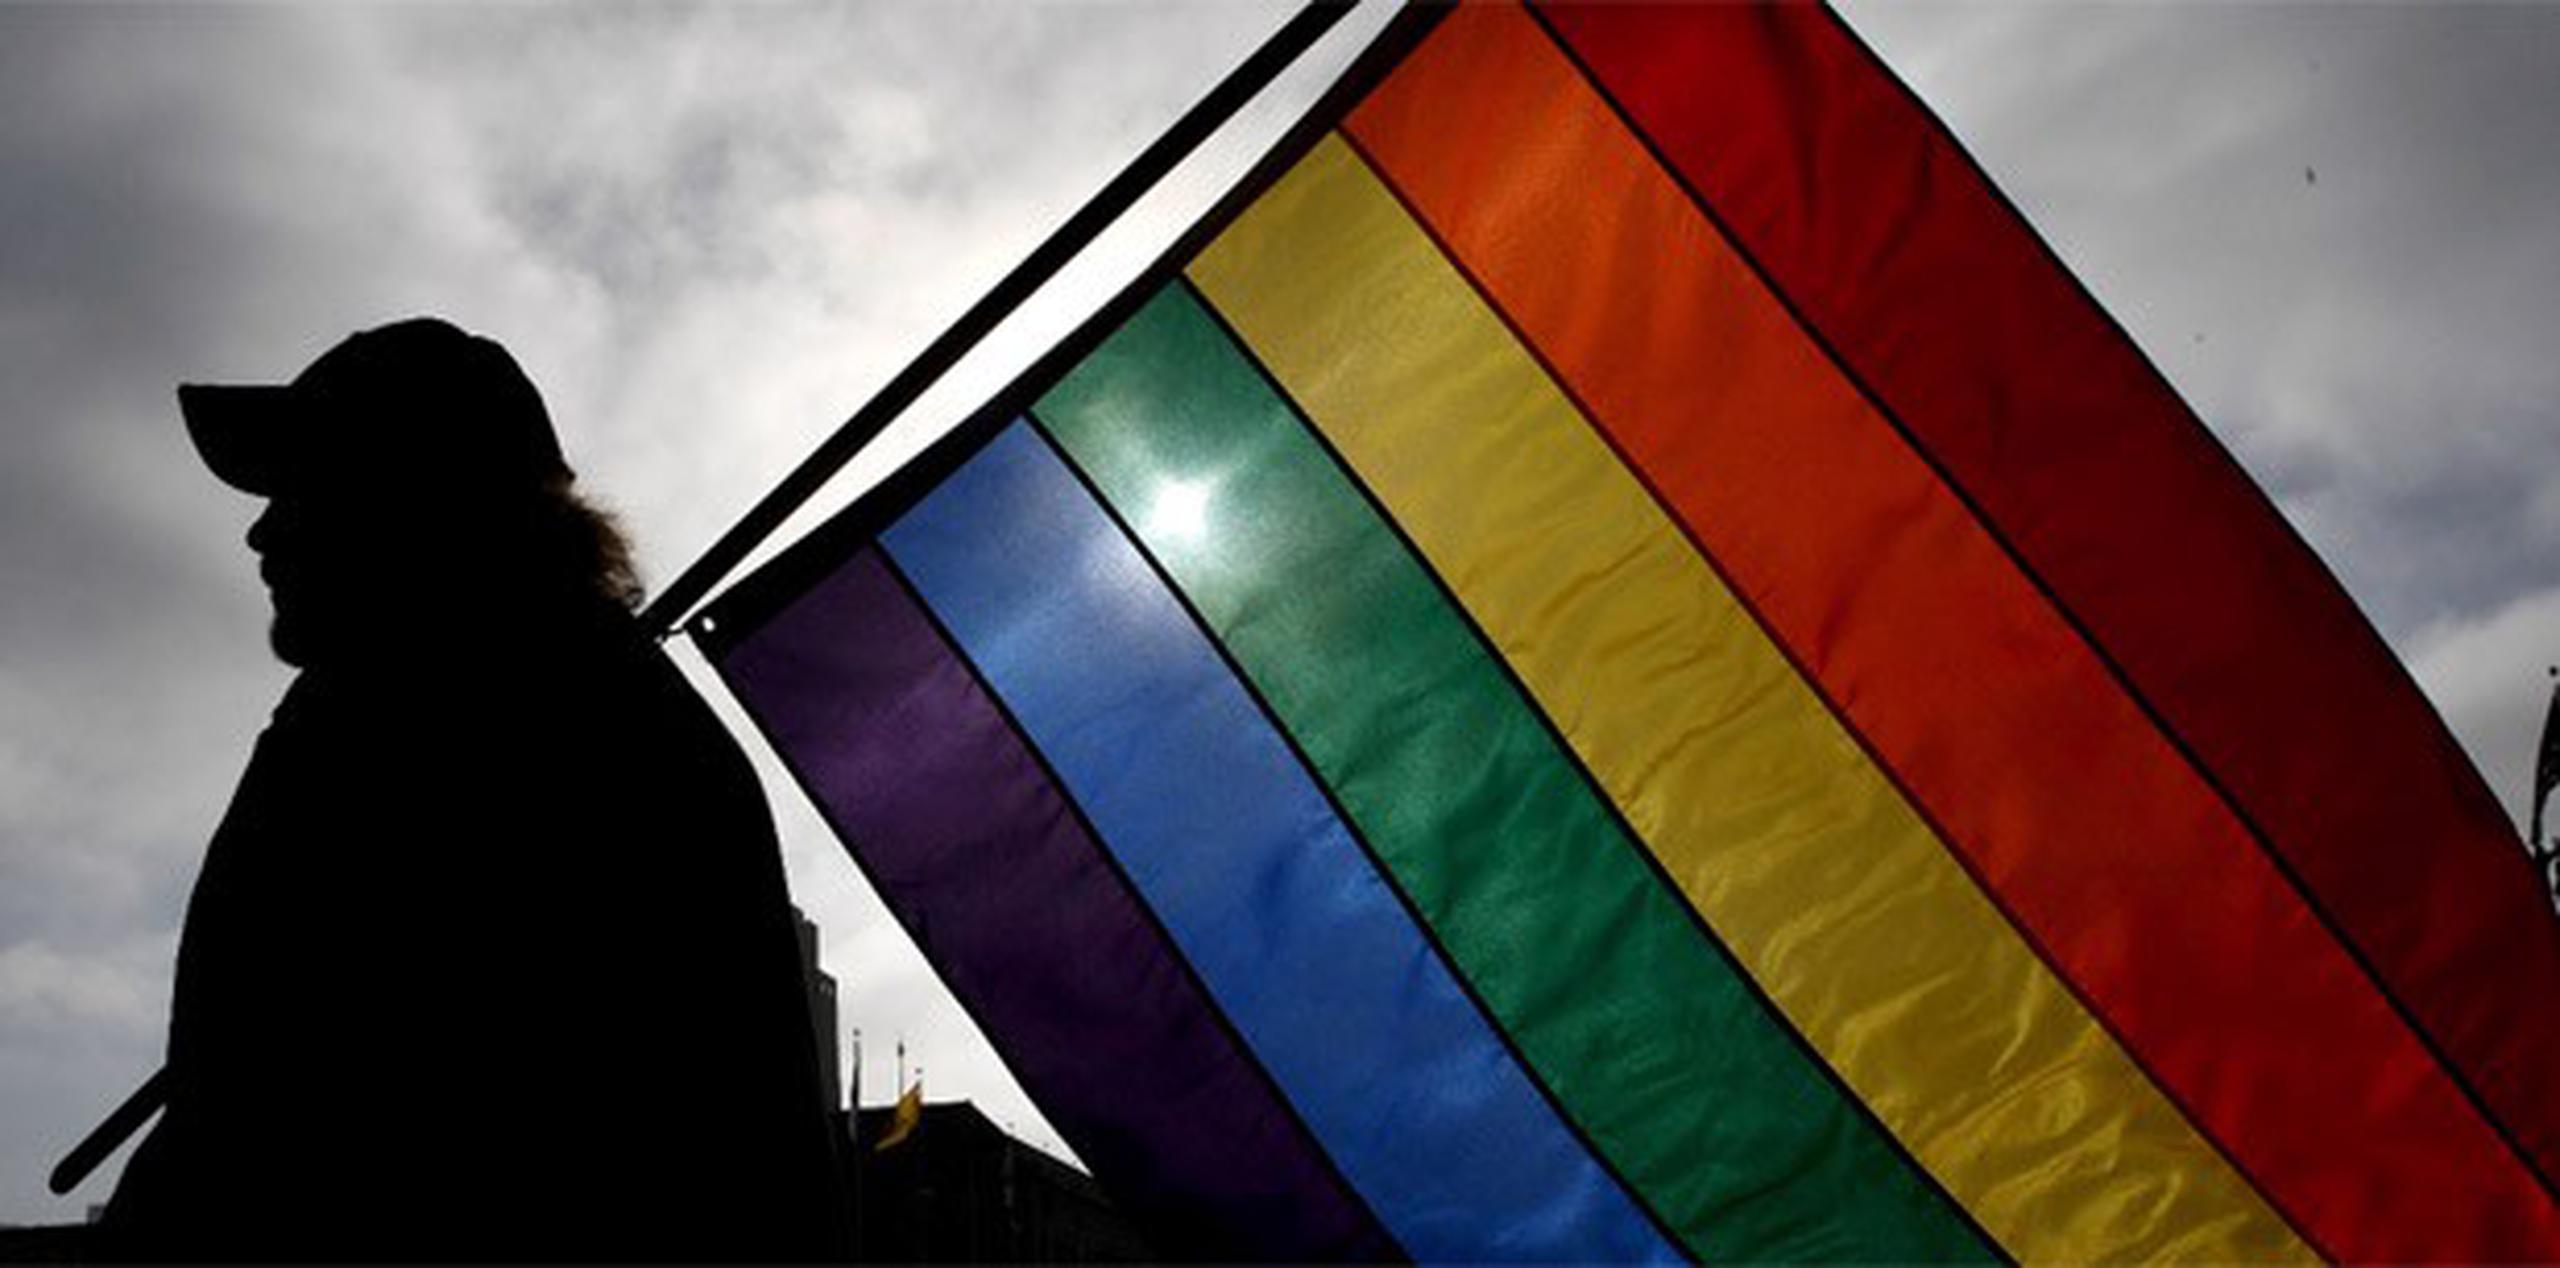 La ley egipcia no criminaliza explícitamente la homosexualidad, sino lo que denomina "libertinaje", por lo que los gais procesados siempre afrontan acusaciones de prácticas inmorales. (Archivo)